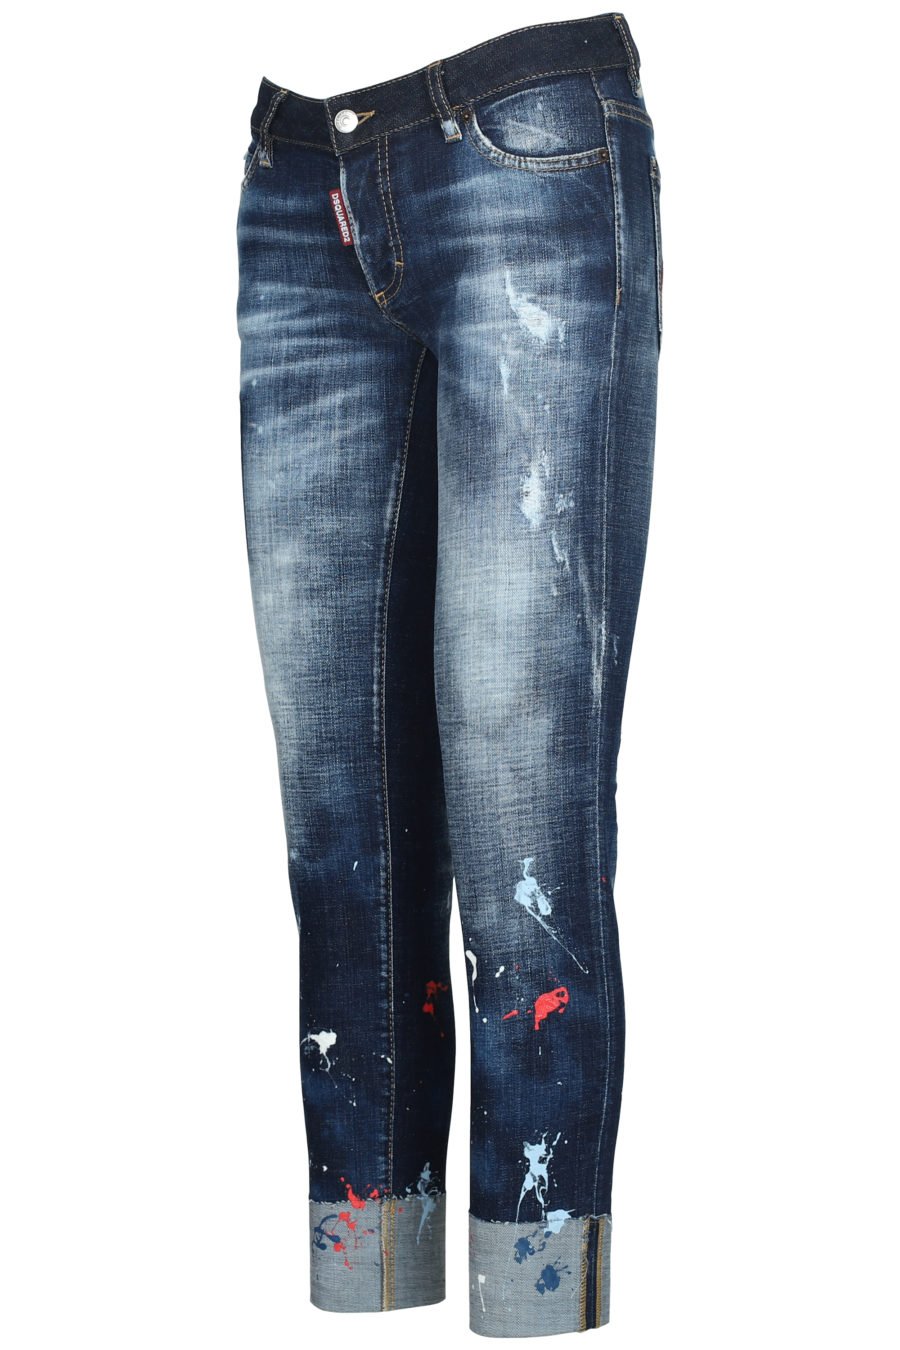 Jeans avec taches de peinture "Jennifer cropped" - IMG 5613